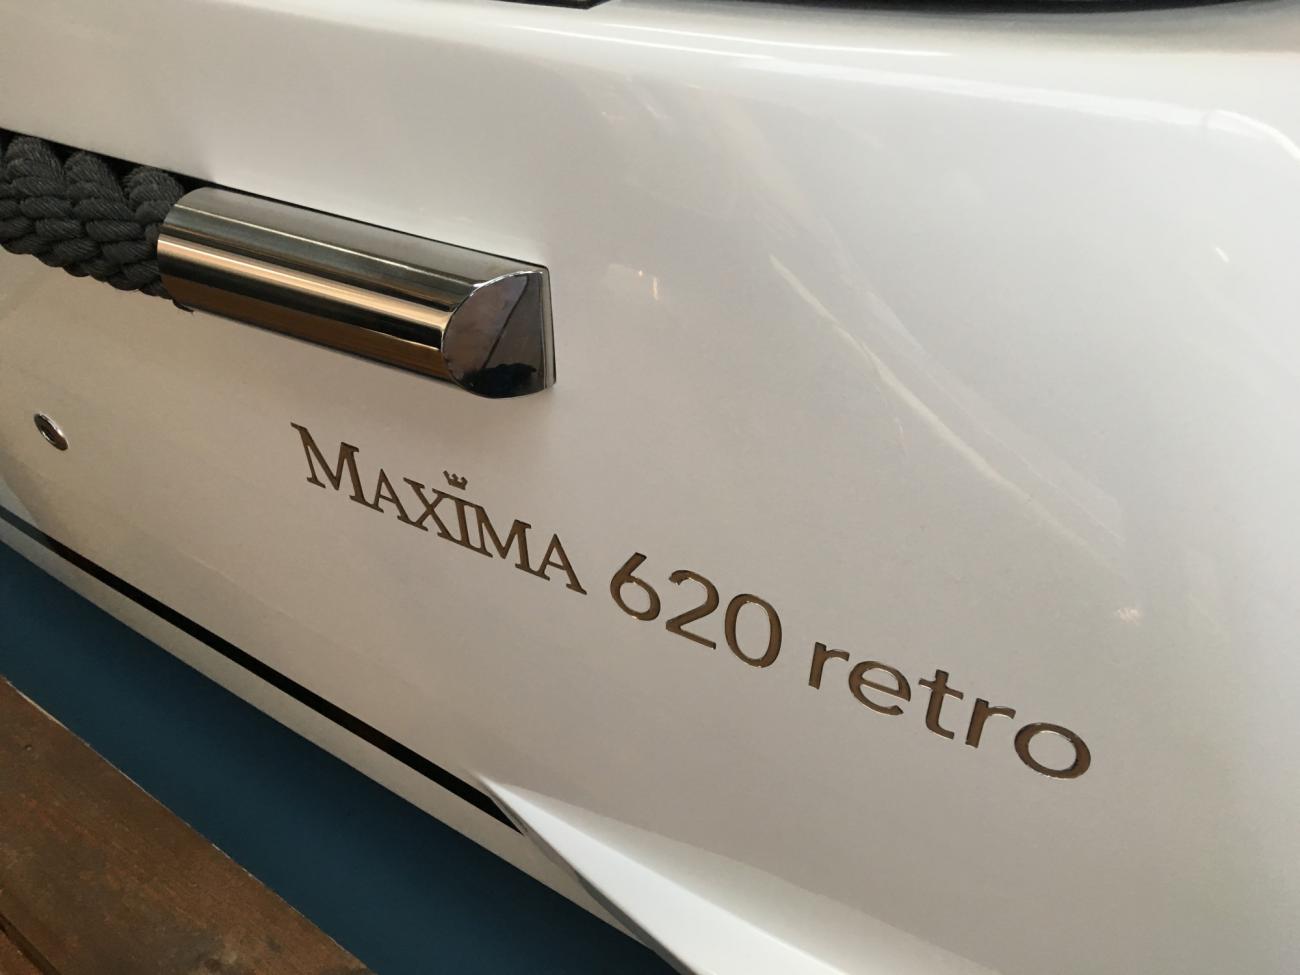 Maxima 620 Retro MC